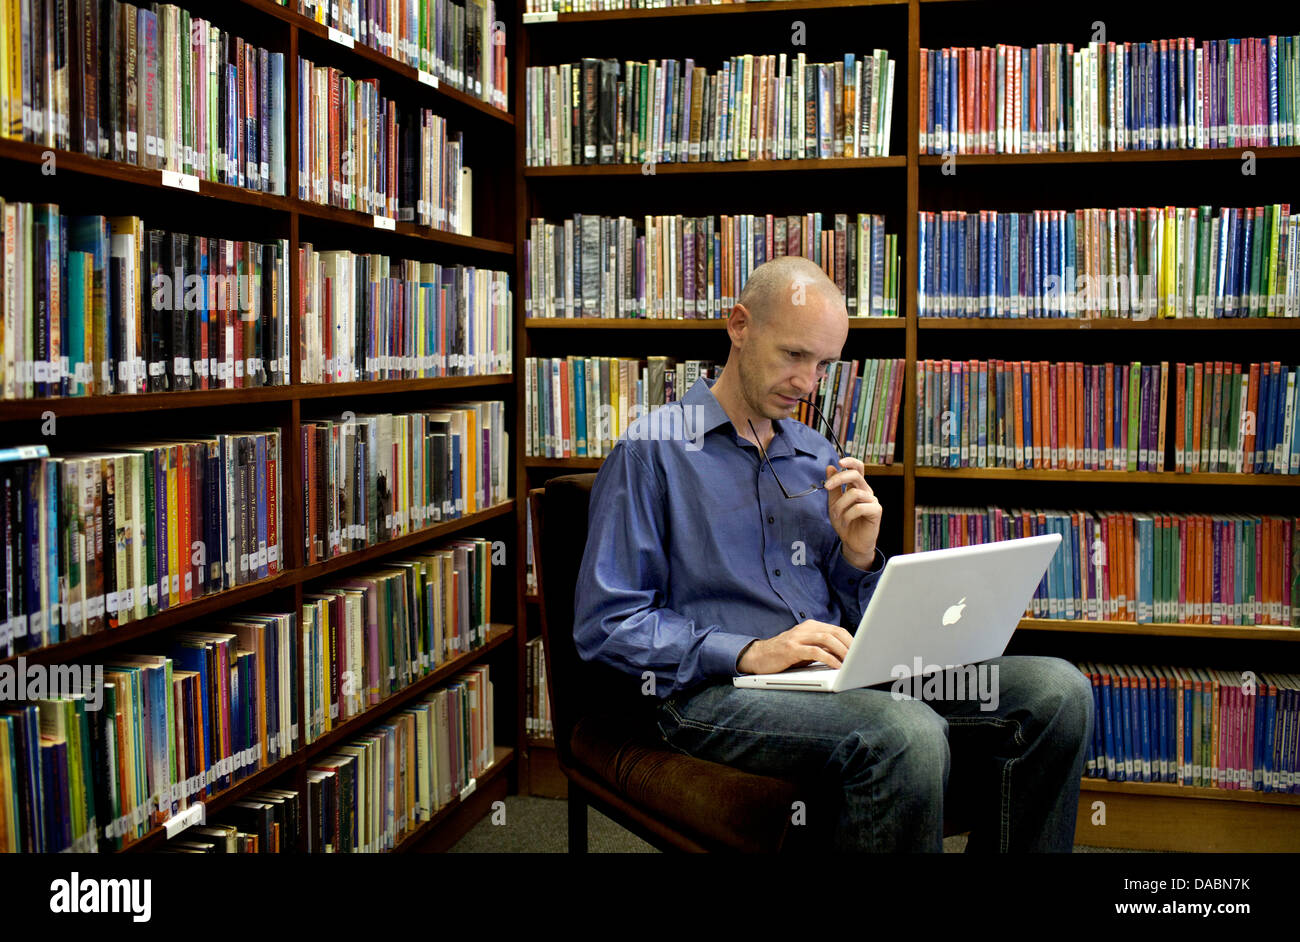 Cape Town-Südafrika-Michael sitzt auf Stuhl in Bibliothek arbeiten am Laptop, den er von Regalen Bücher 25. Februar 2013 umgeben ist. Stockfoto